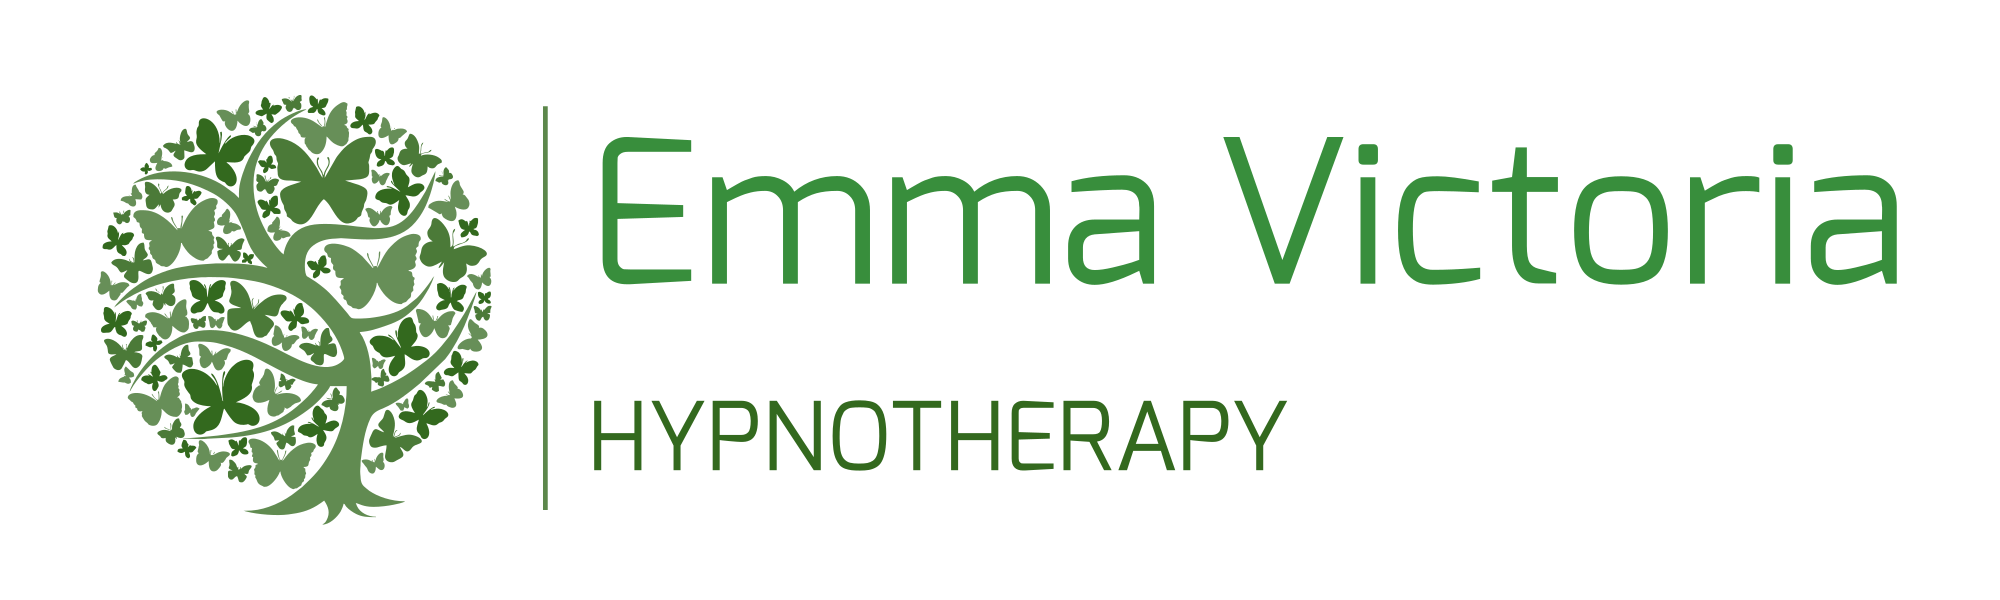 Emma Victoria Hypnotherapy